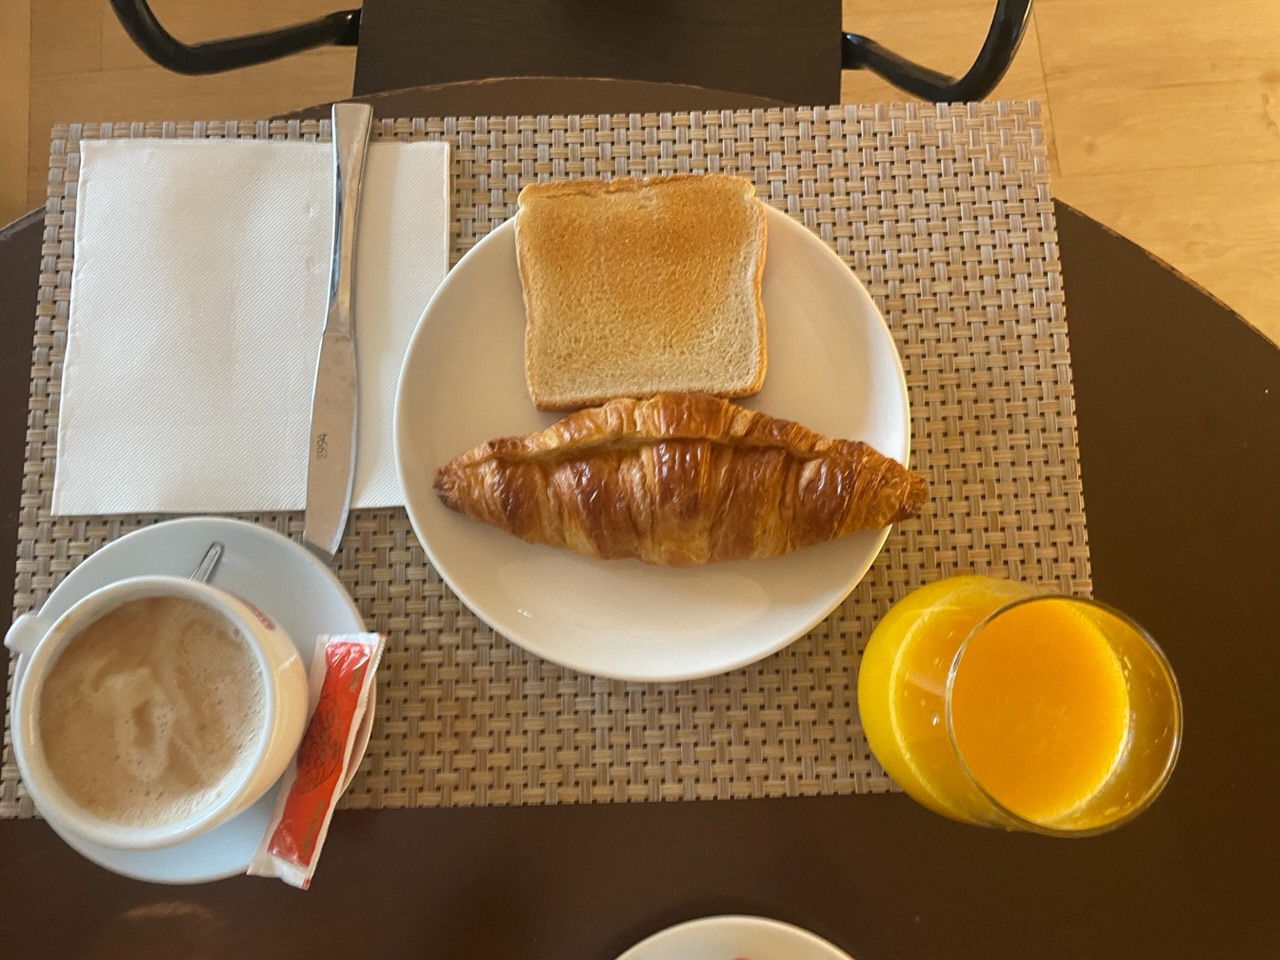 아침 - 커피, 생과일 주스, 크로와상, 식빵 (5유로)